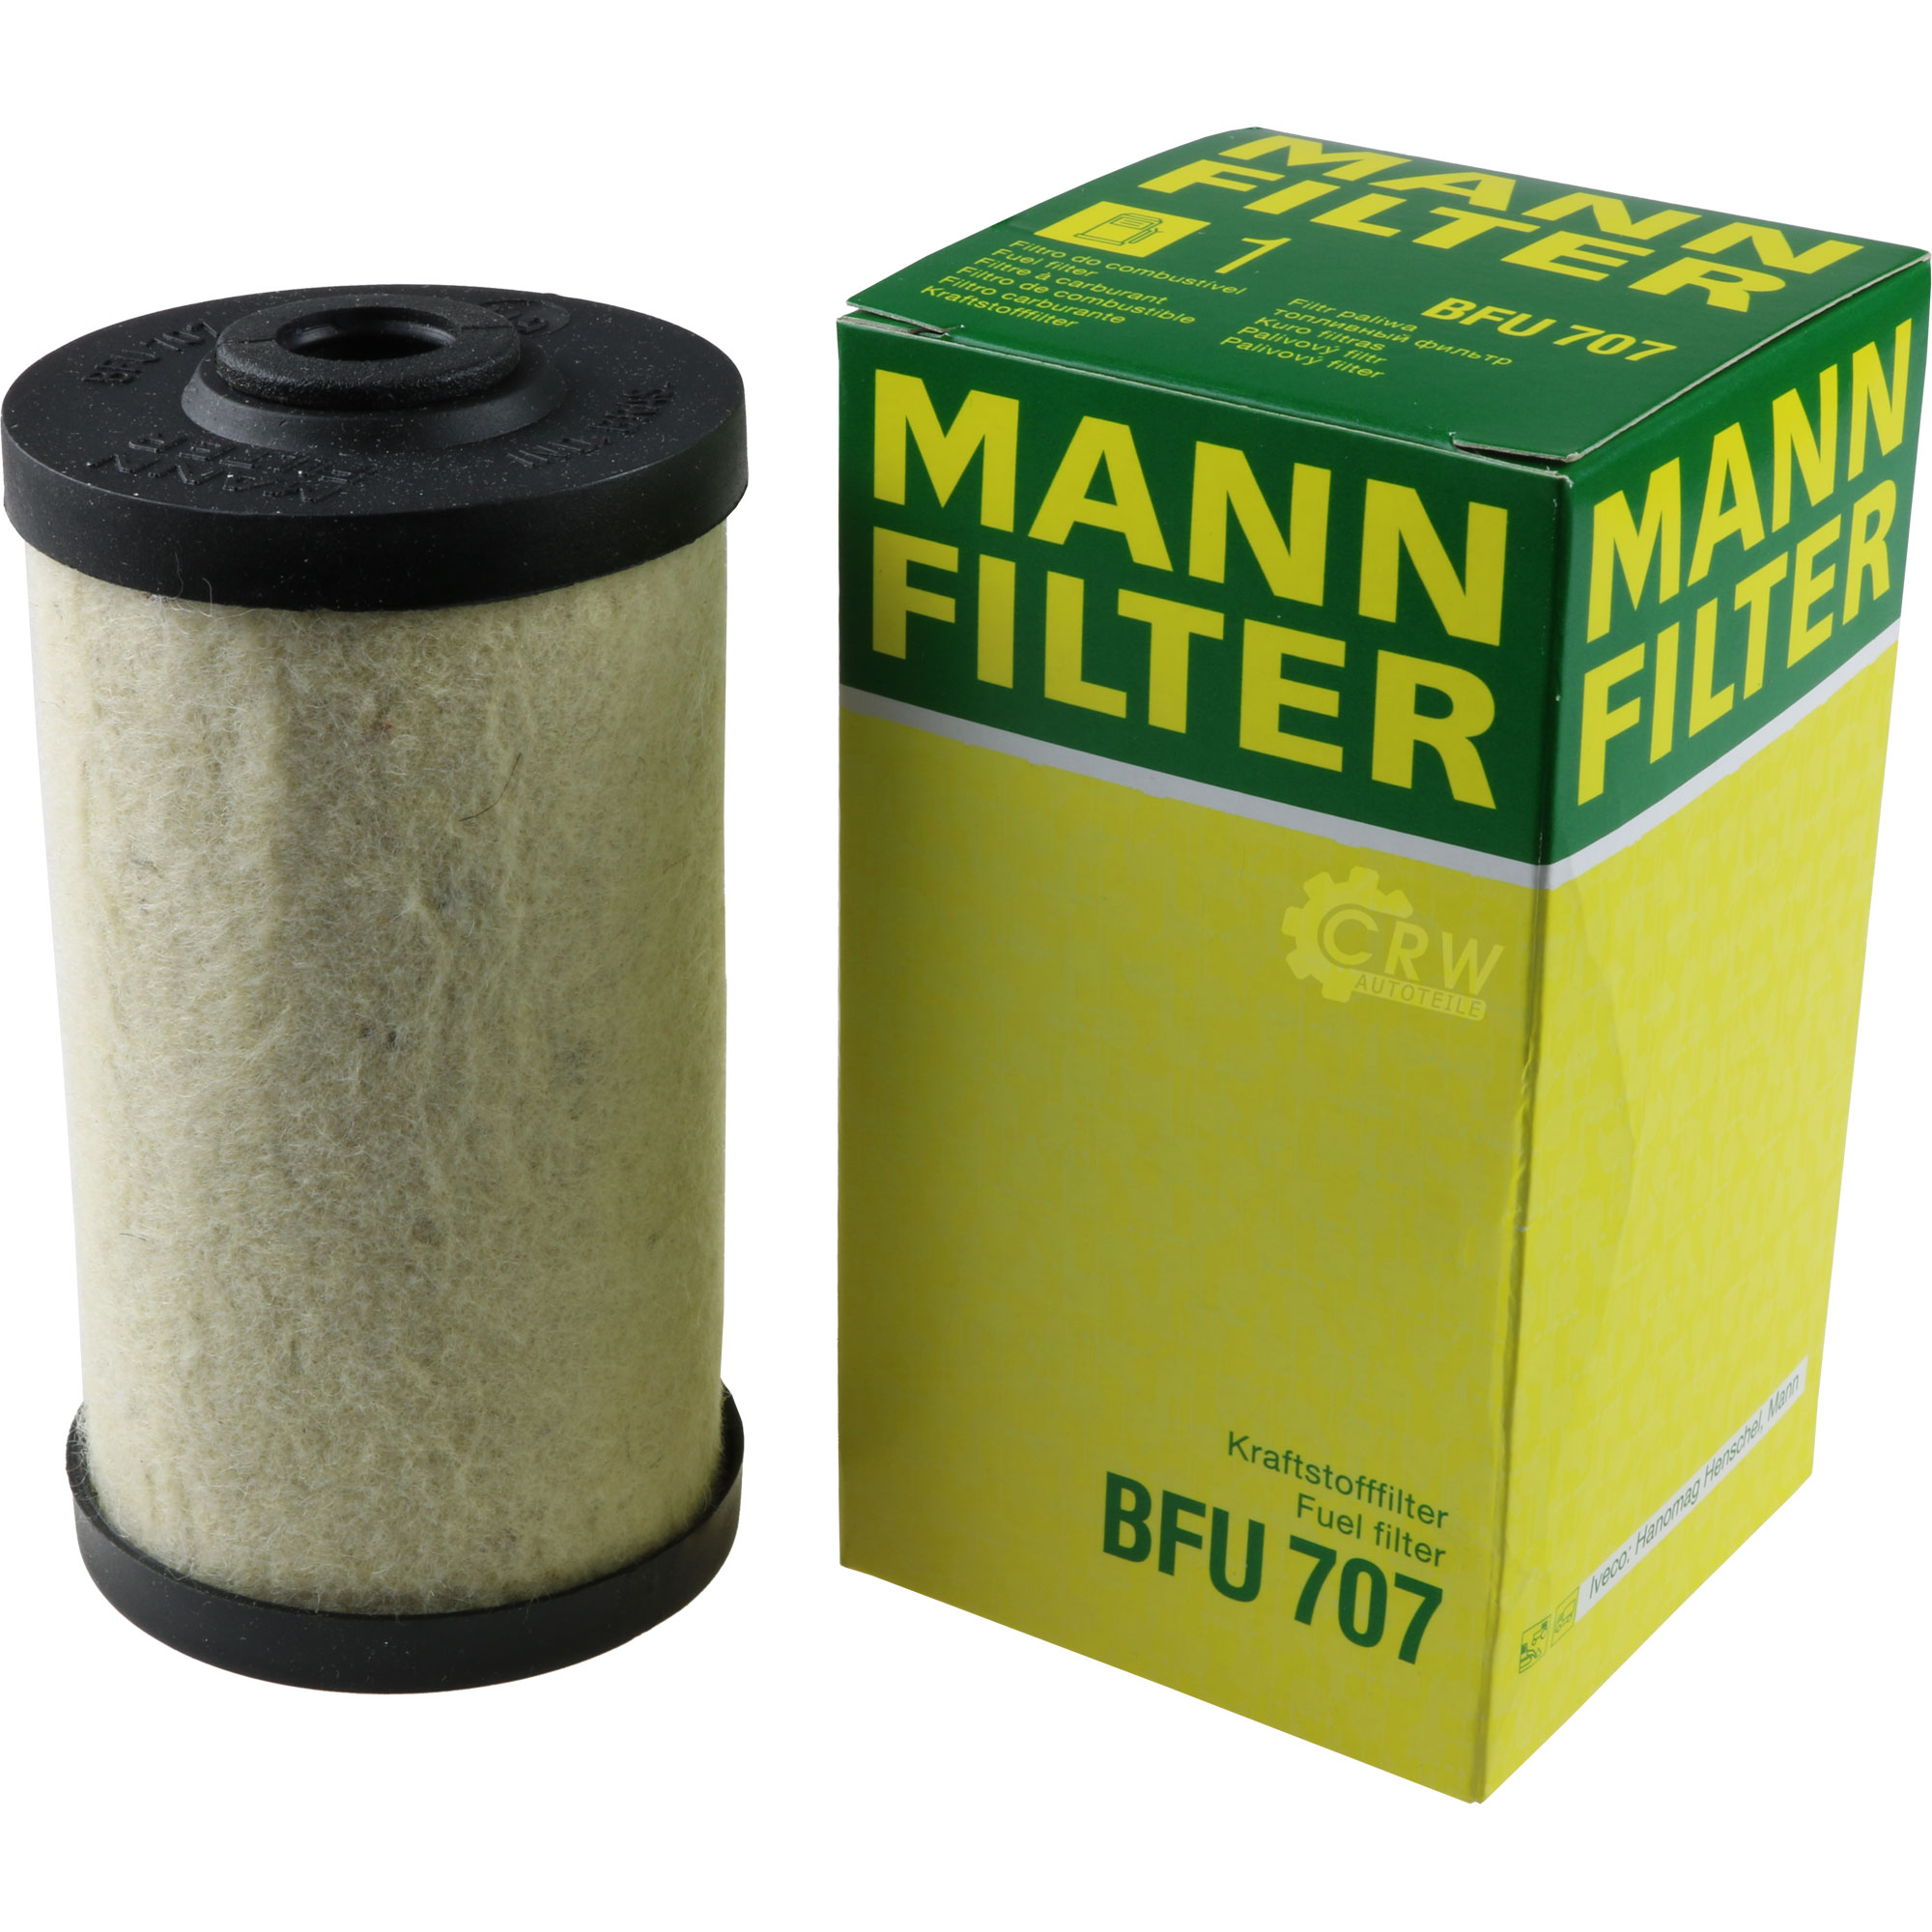 MANN-FILTER Kraftstofffilter BFU 707 Fuel Filter